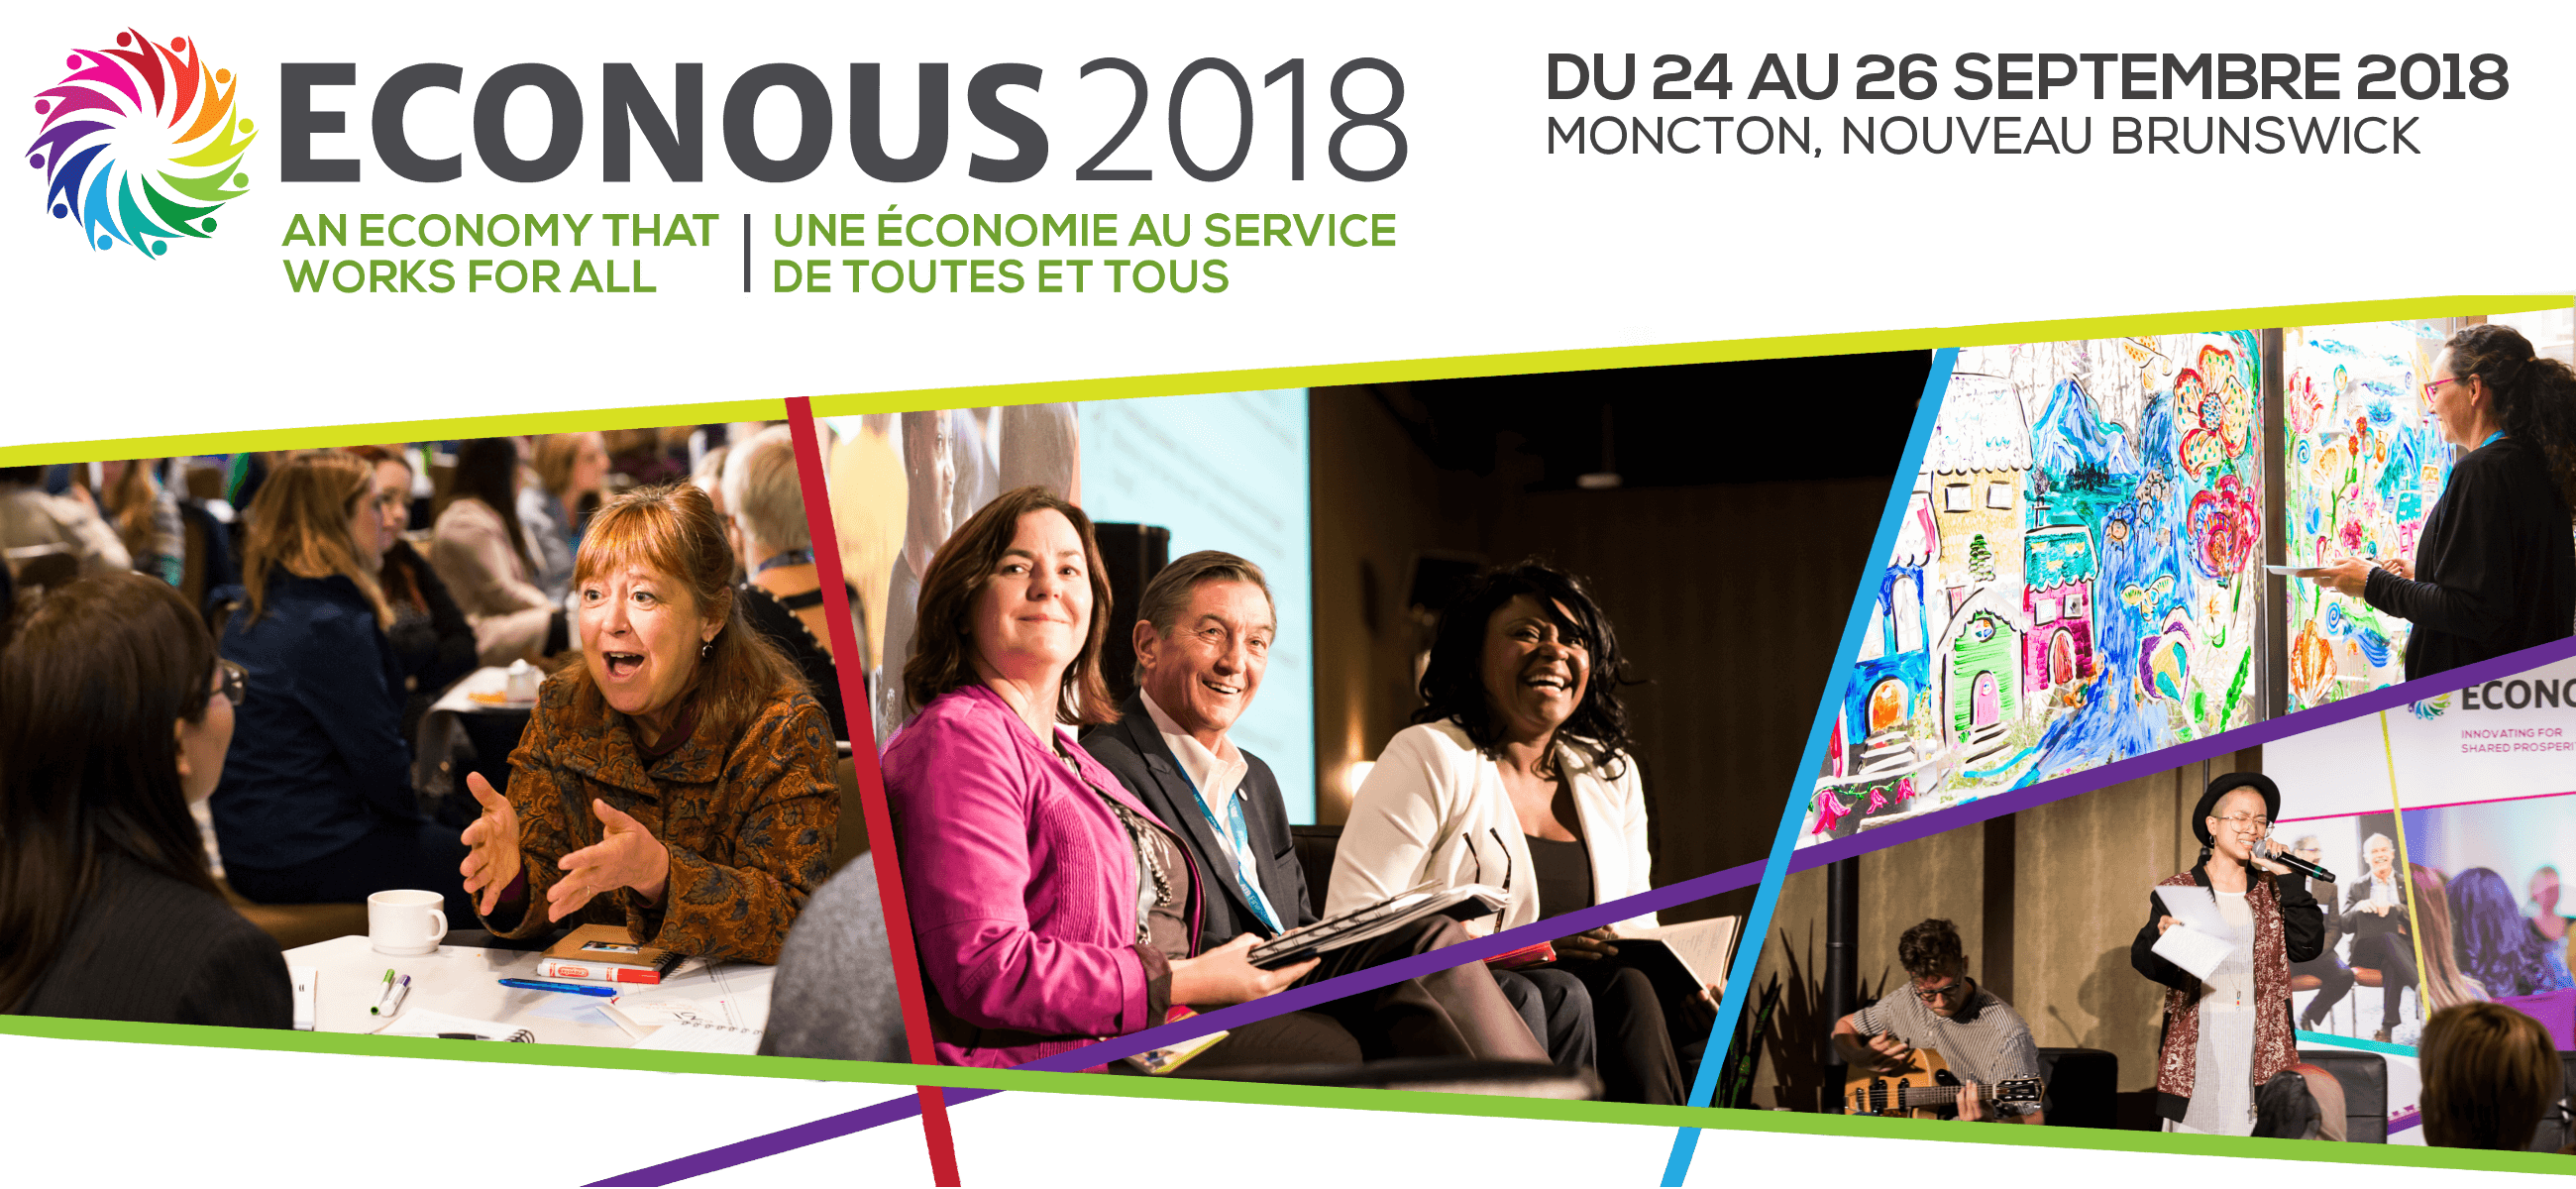 ECONOUS2018: une économie au service de toutes et tous (24 au 26 septembre 2018, Moncton, N-B)